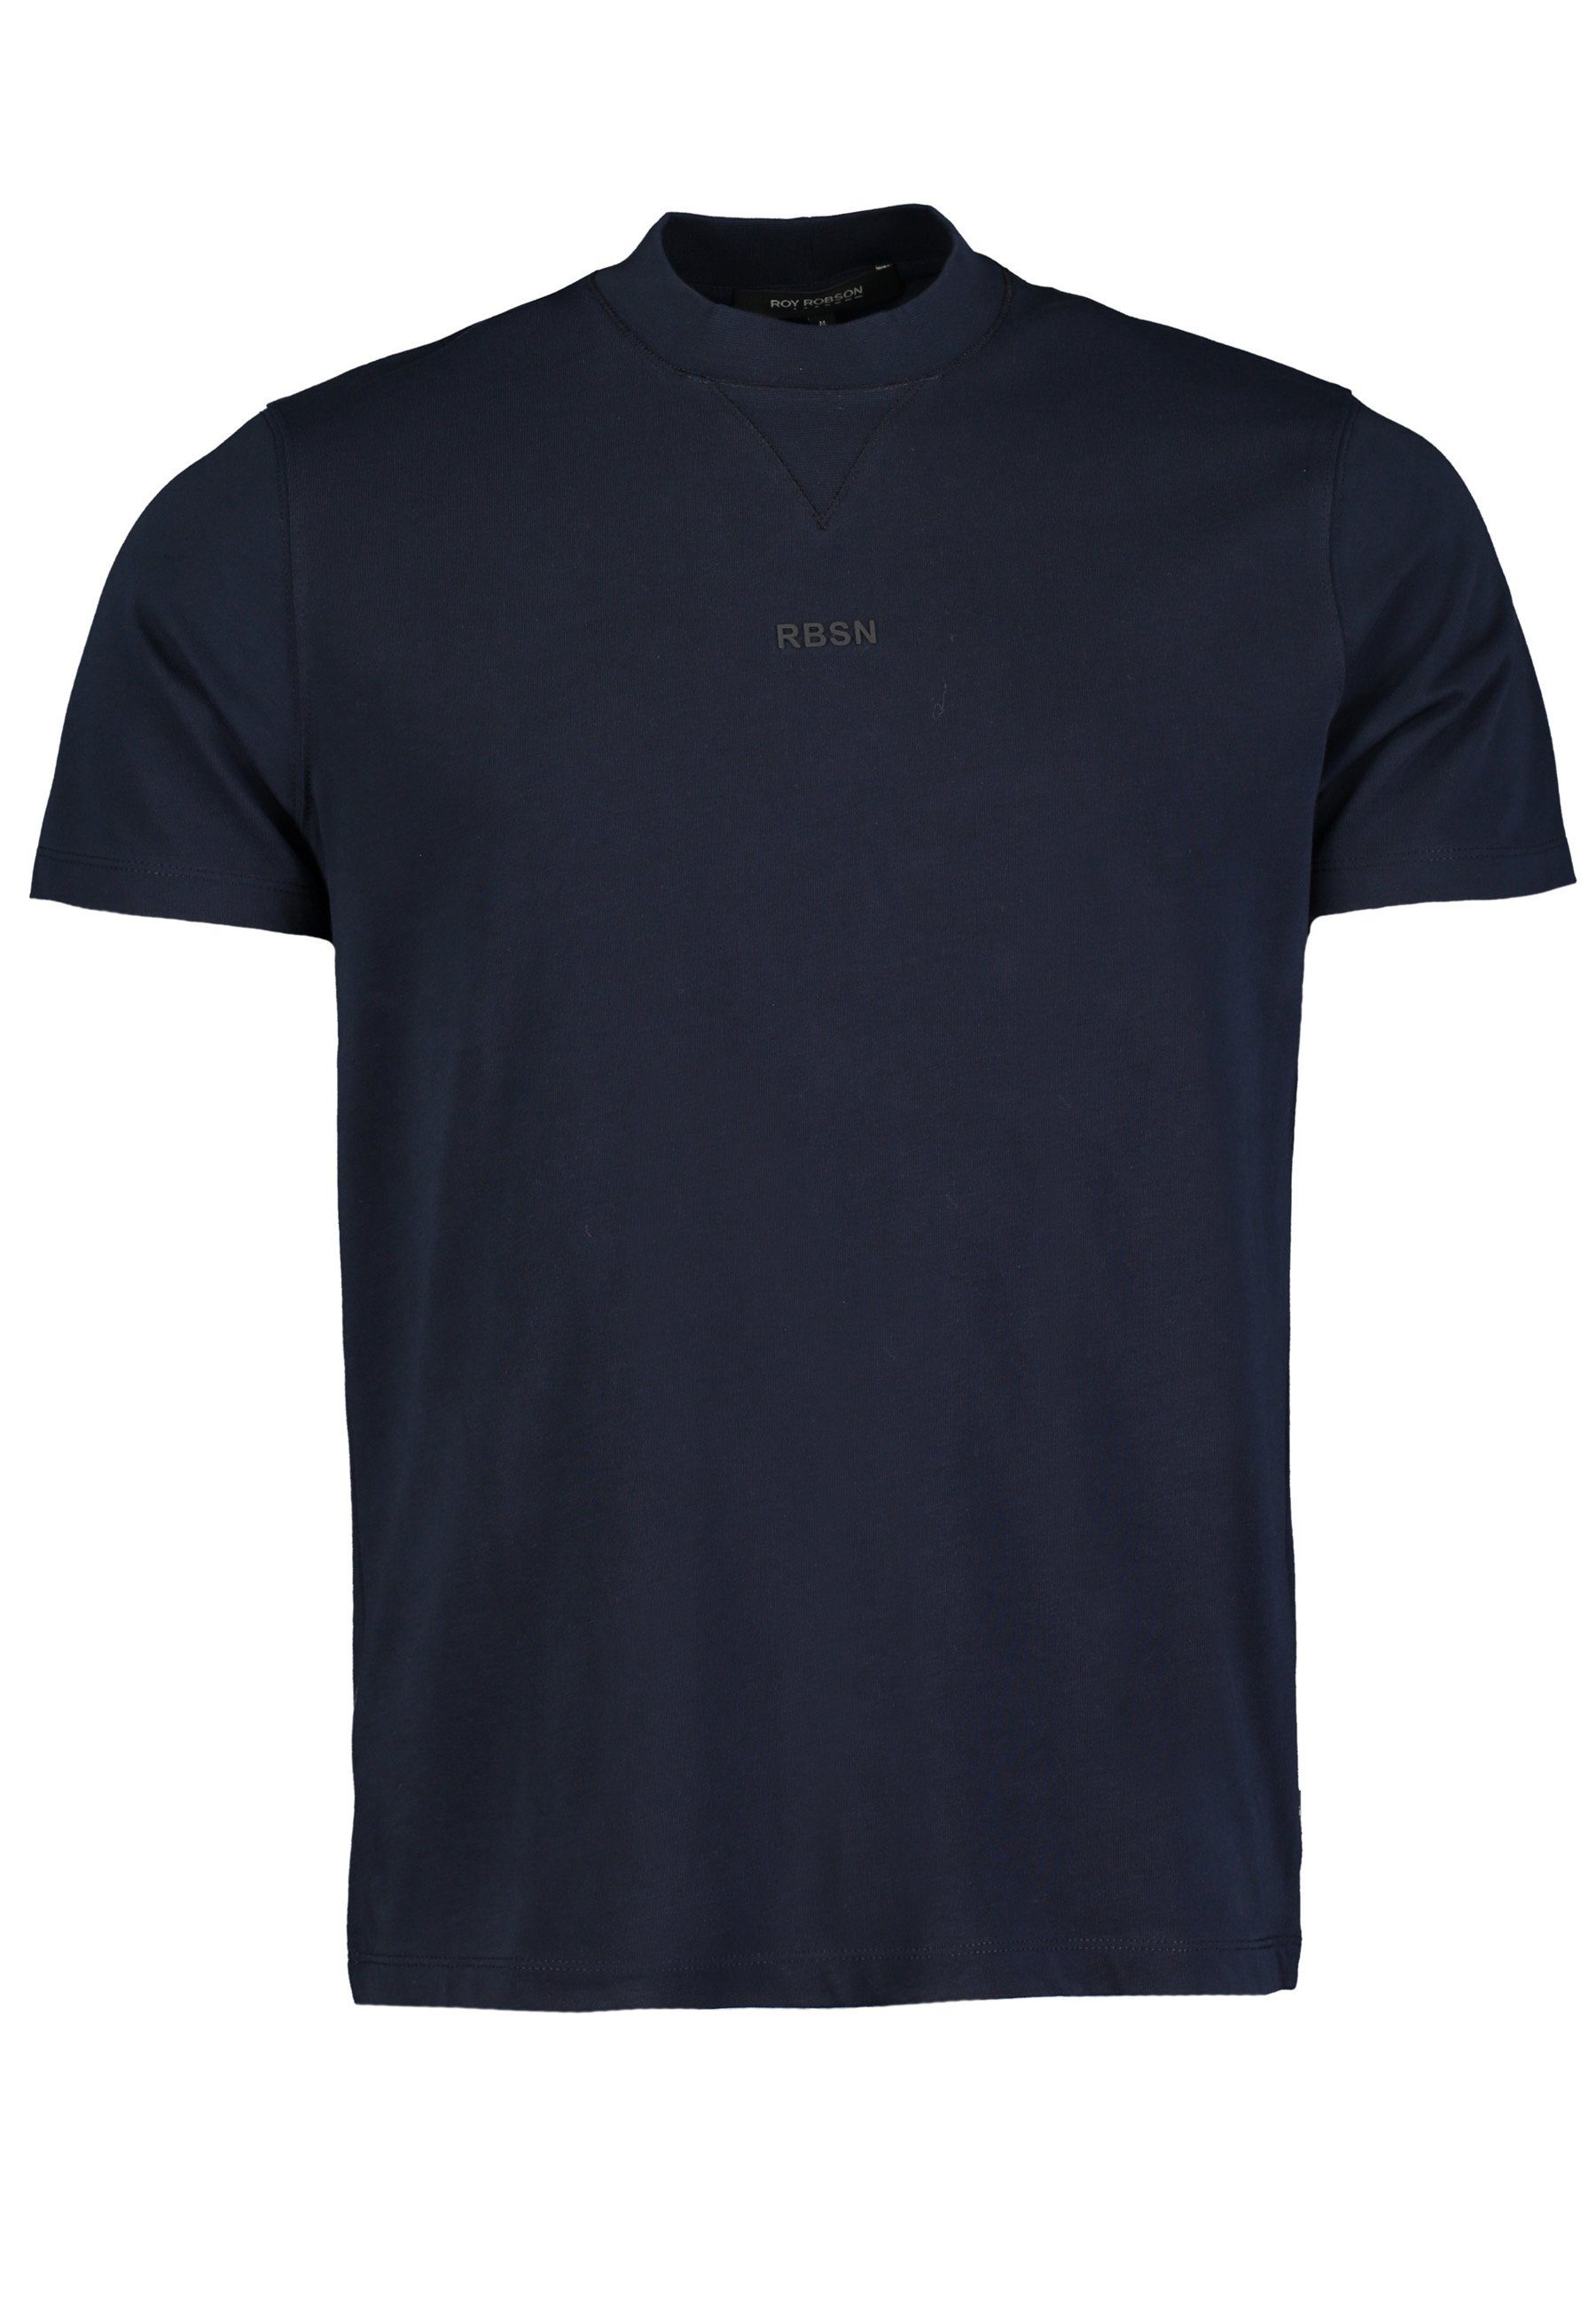 Roy T-Shirt Rundhals Robson T-Shirt dunkelblau mit